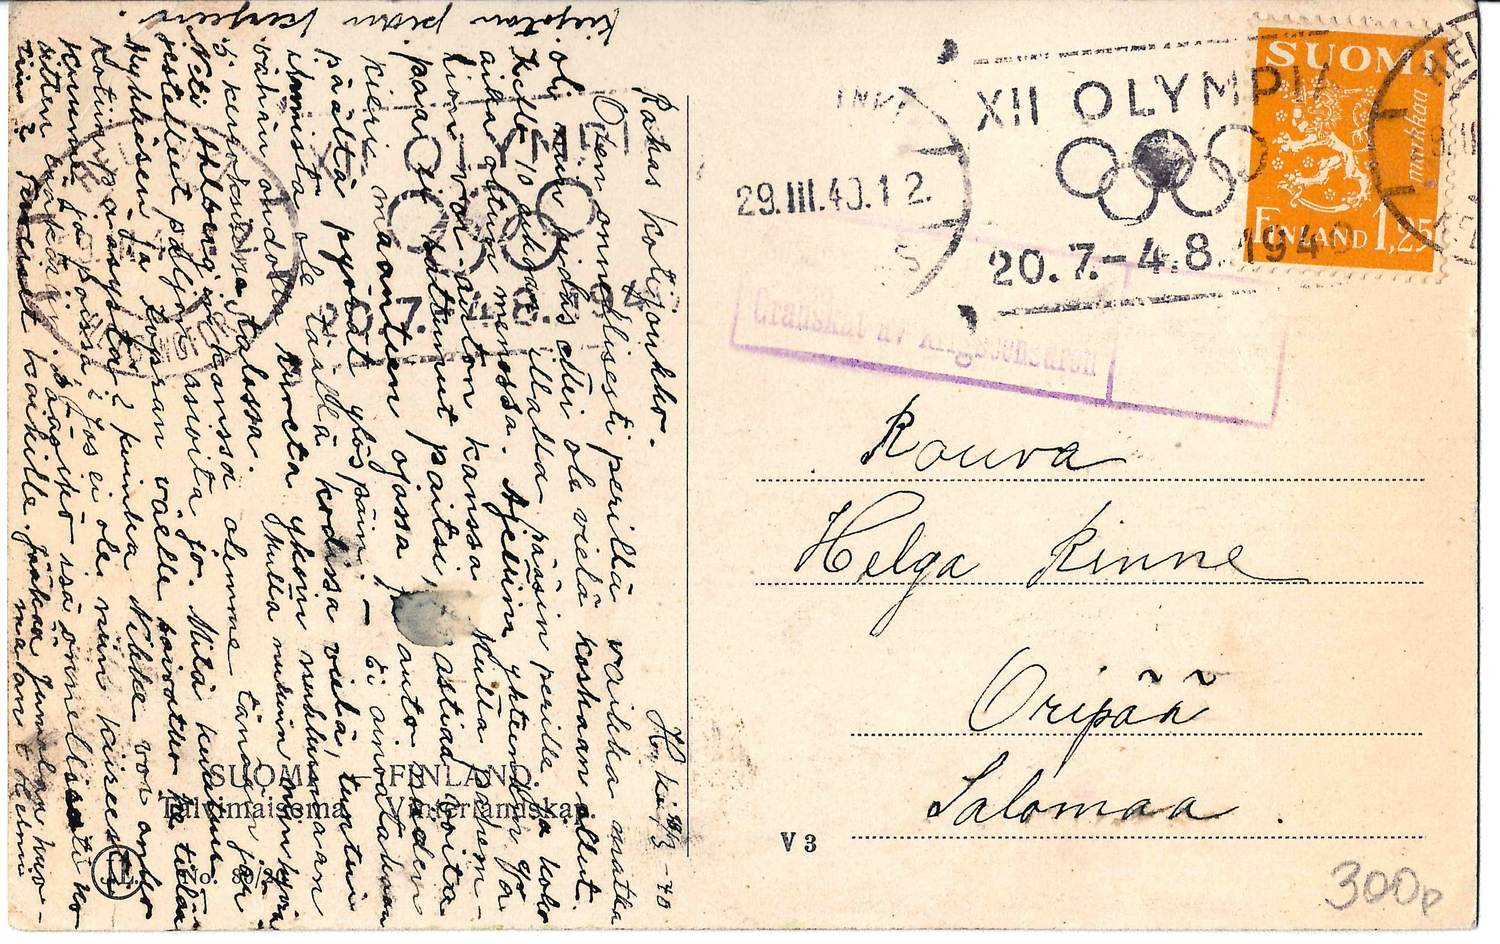 Финляндия. Почтовая карточка с виньеткой «XII Олимпийские игры. Хельсинки. Финляндия. 1940», прошедшая почту (отправлено из Хельсинки 29 марта 1940 года, специальное гашение «XII Olympia»).